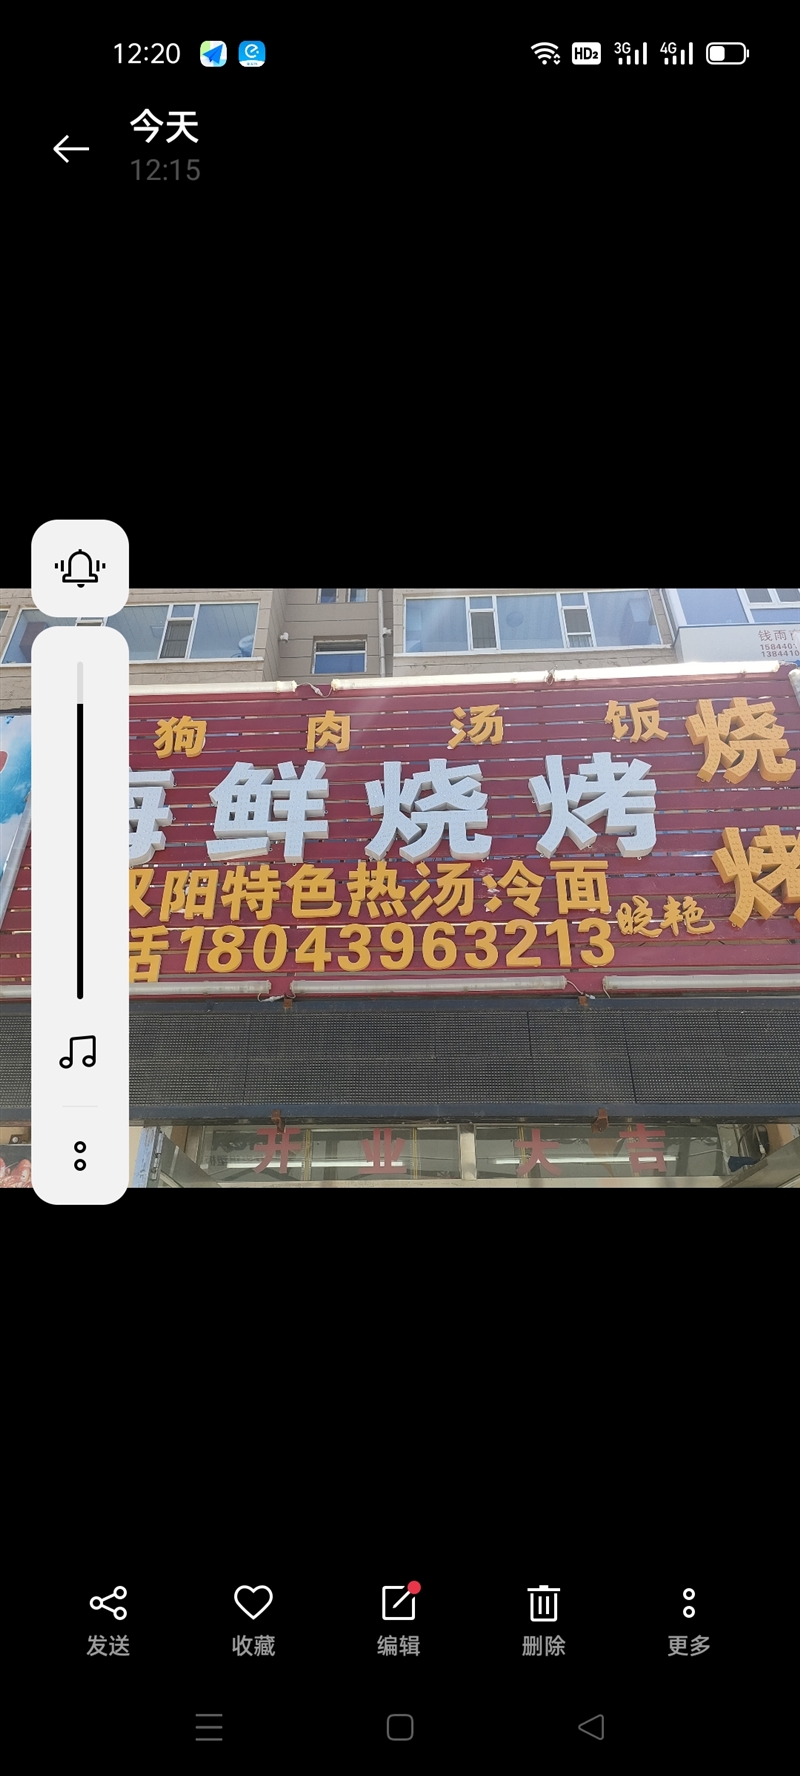 晓艳狗肉汤饭海鲜烧烤店的图标